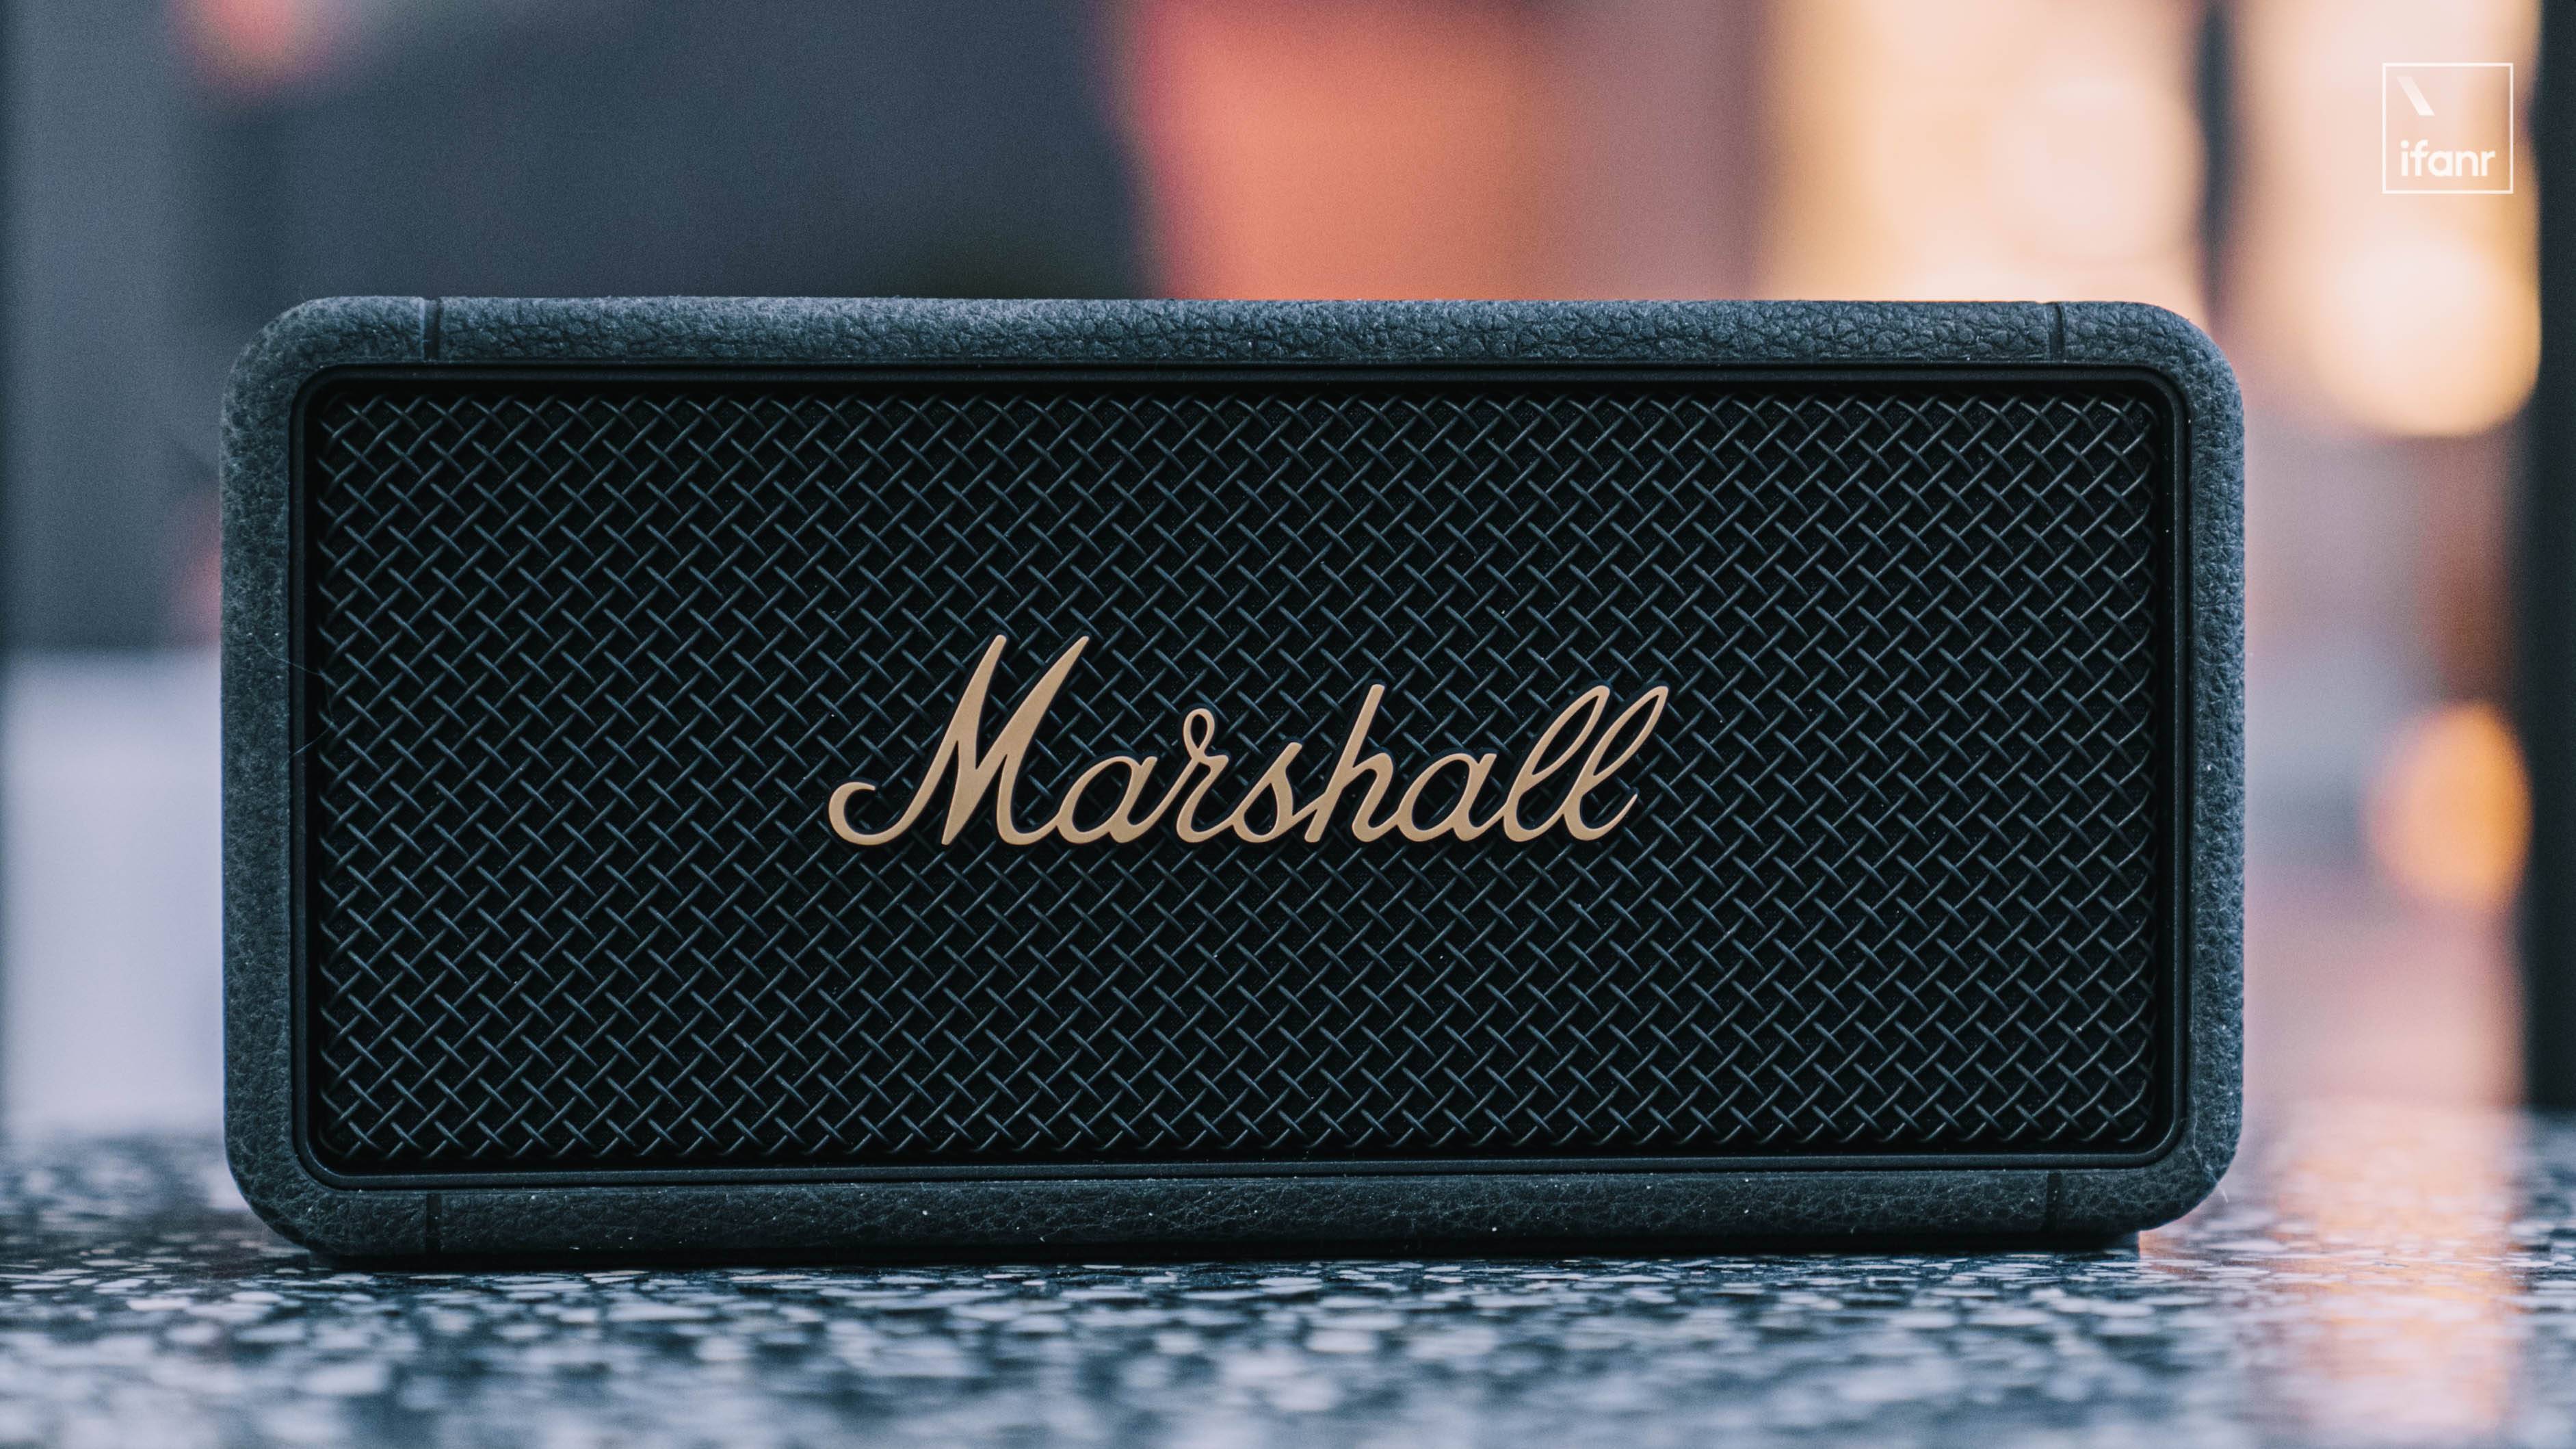 DSC05350 - Rilascio di Marshall Middleton: power bank mobile Marshall che supporta la ricarica rapida e può ascoltare musica all’aperto